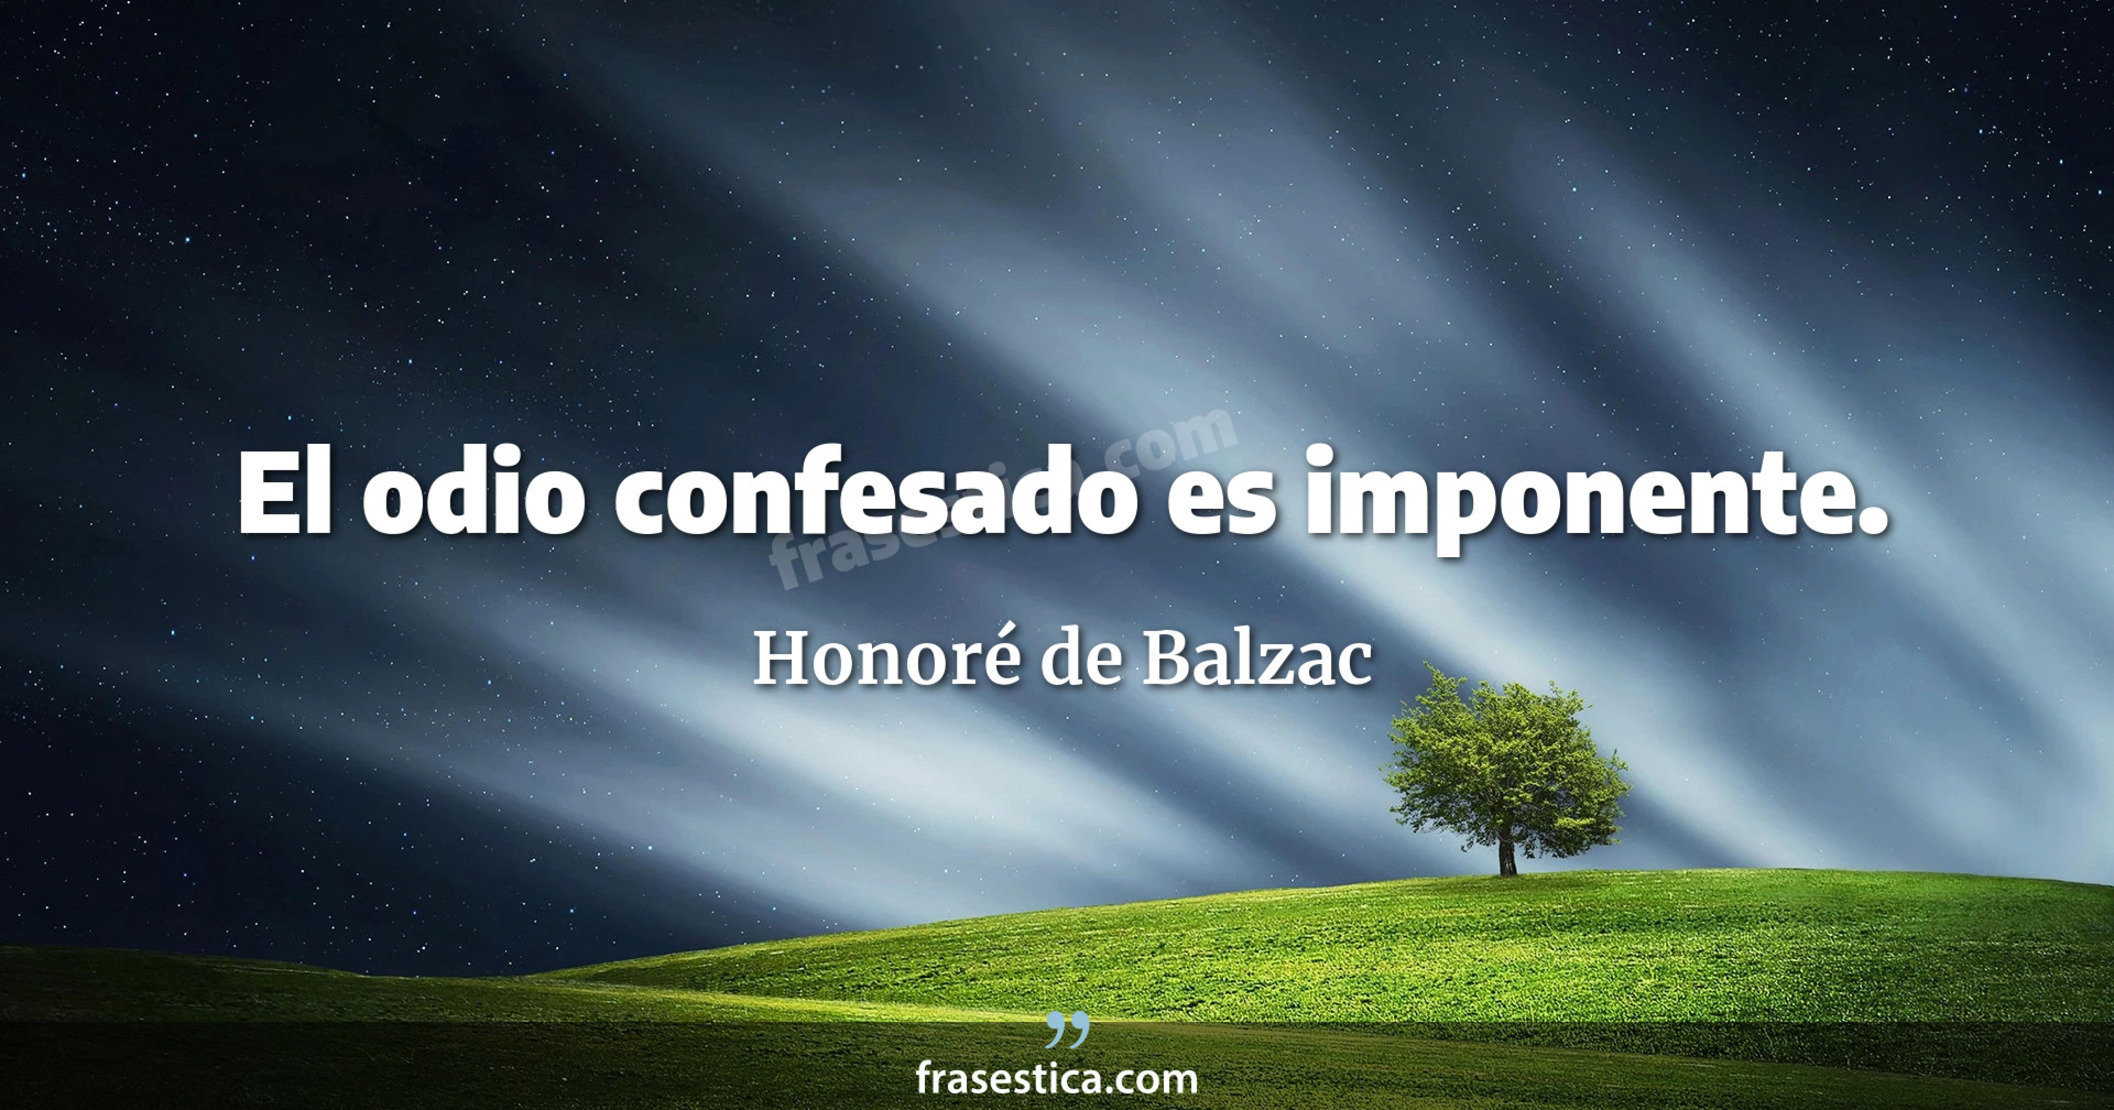 El odio confesado es imponente. - Honoré de Balzac